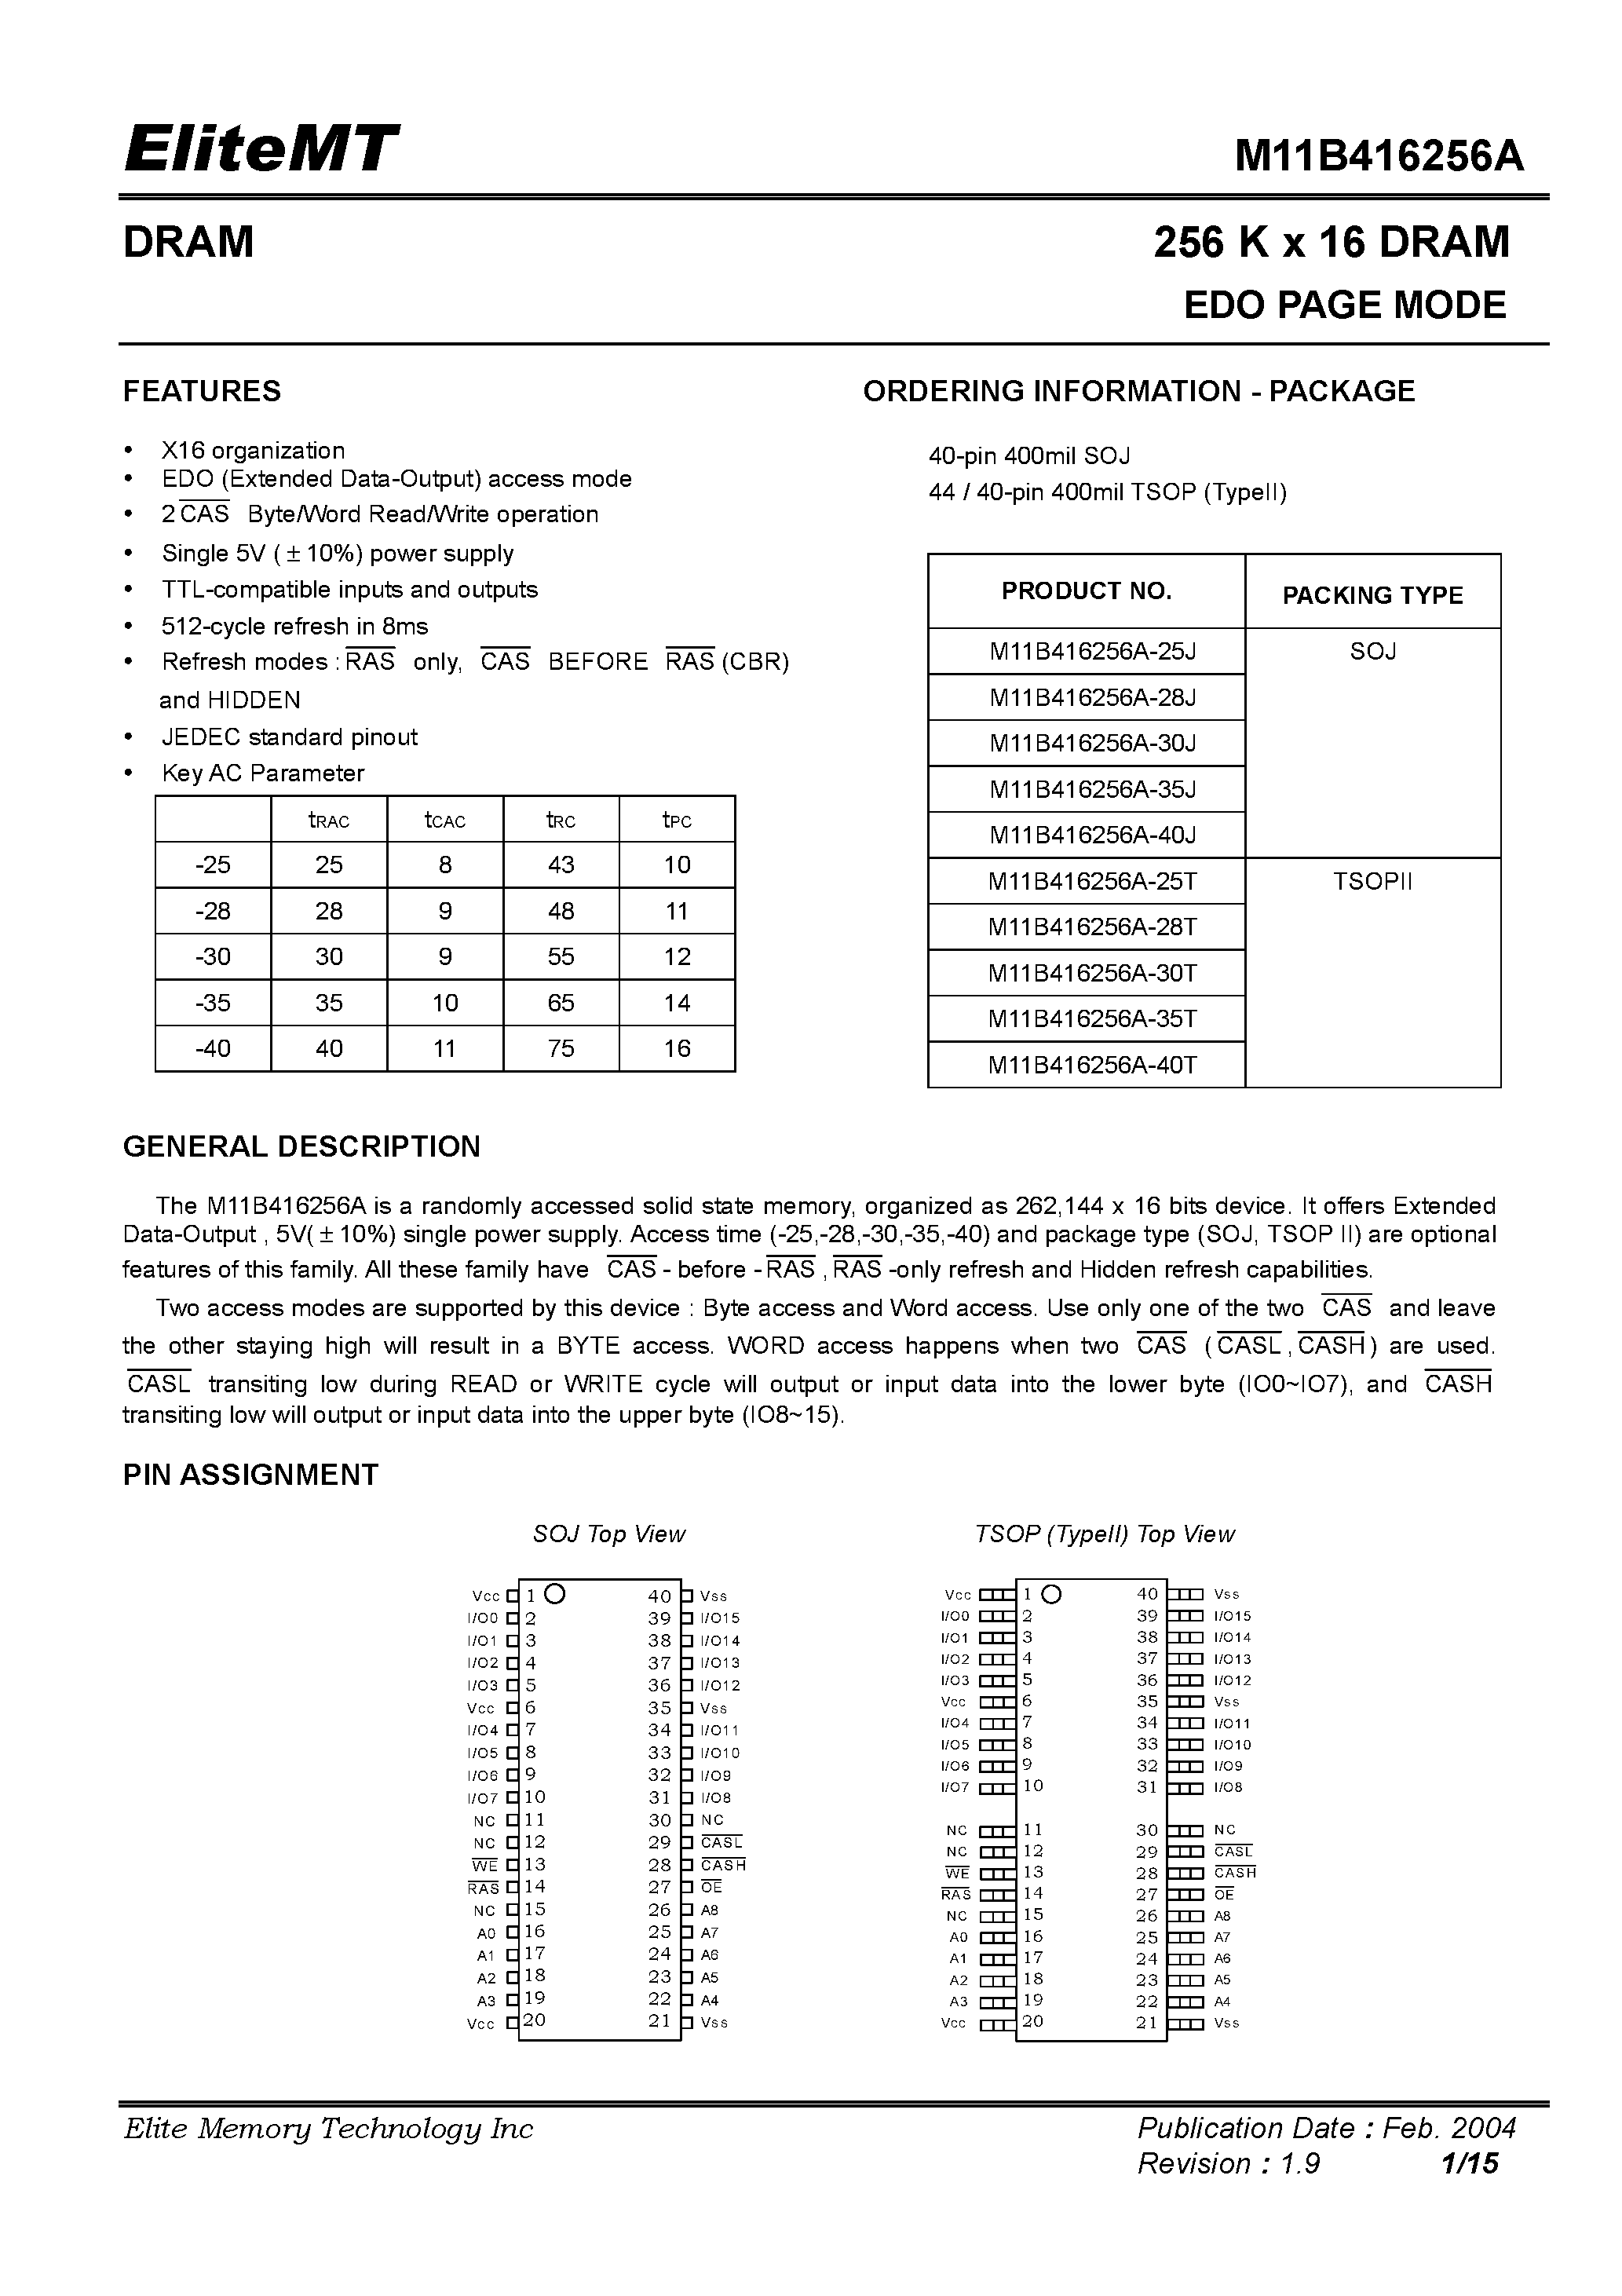 Datasheet M11B416256A-40J - 256 K x 16 DRAM EDO PAGE MODE page 1